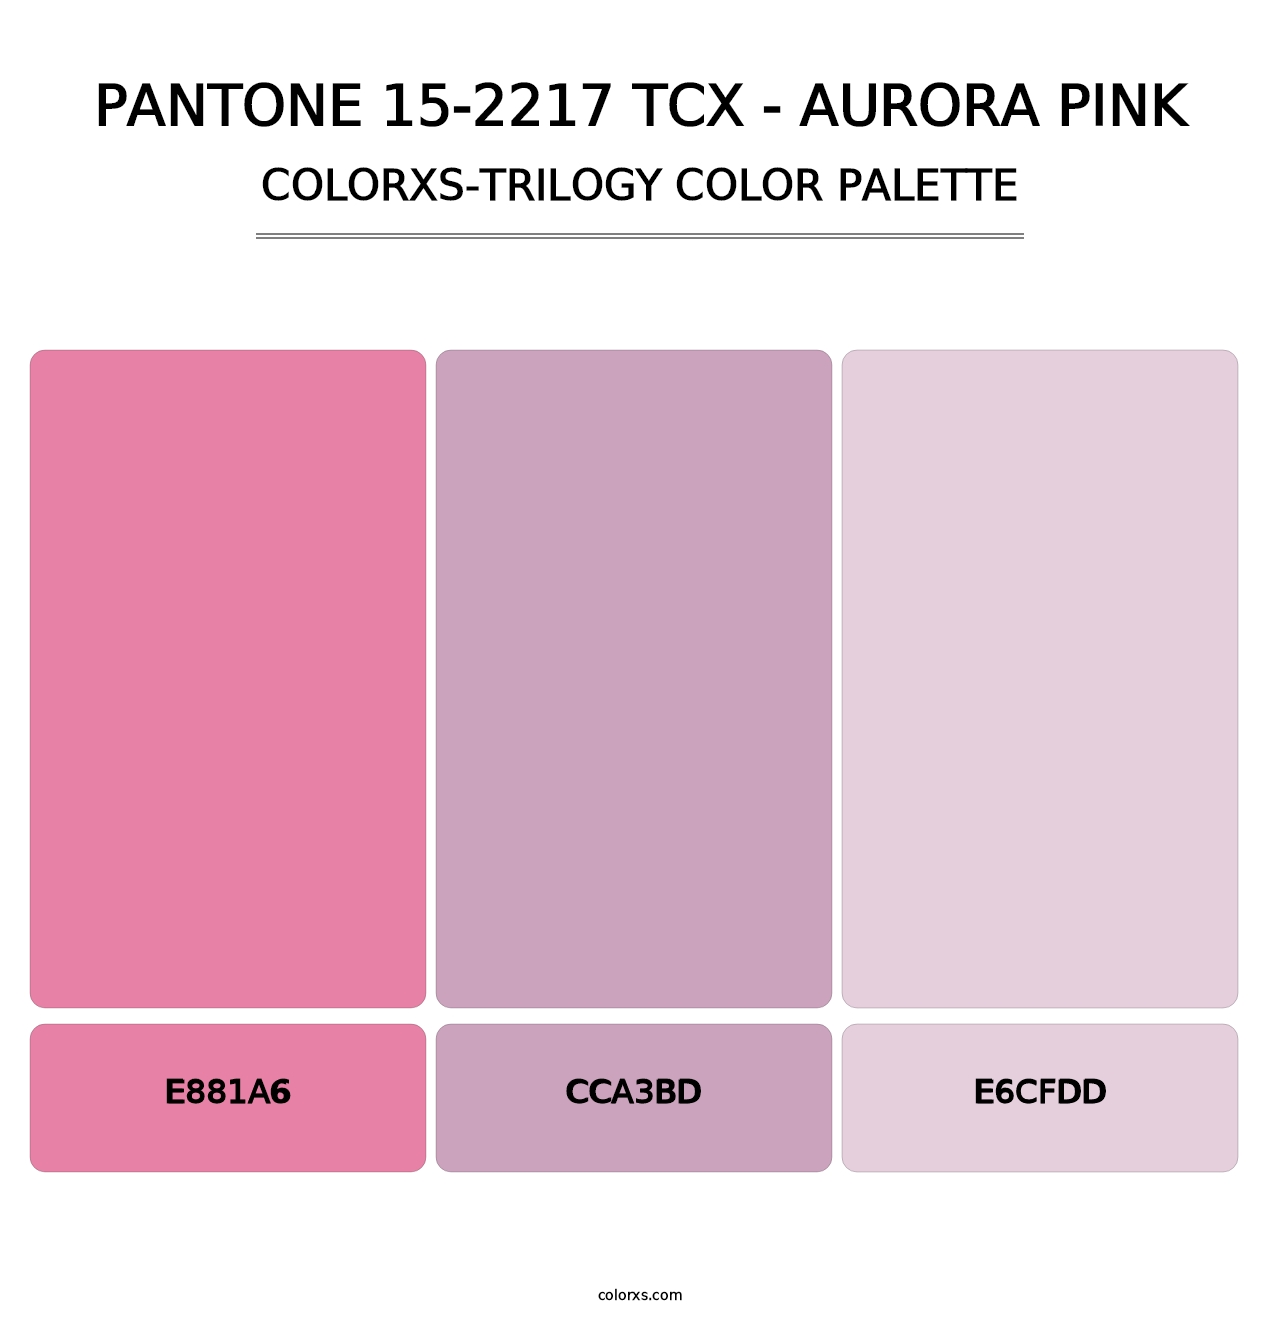 PANTONE 15-2217 TCX - Aurora Pink - Colorxs Trilogy Palette